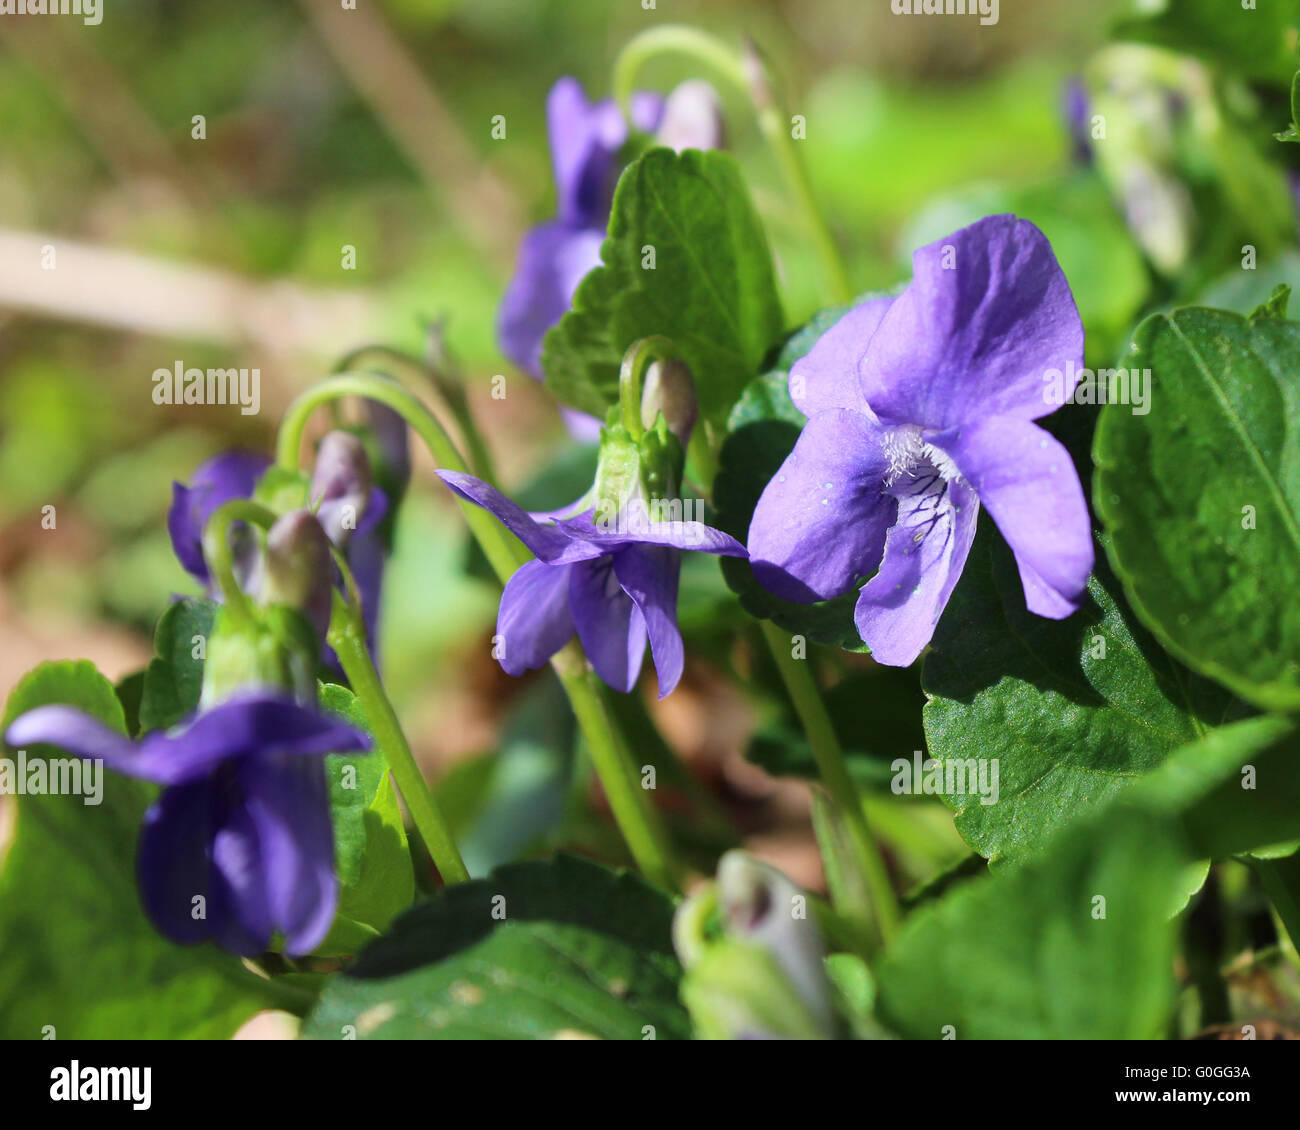 Die schönen Blüten von Viola Sororia, auch bekannt als die gemeinsame blau violett oder Holz violett, wächst in einer natürlichen Umgebung. Stockfoto